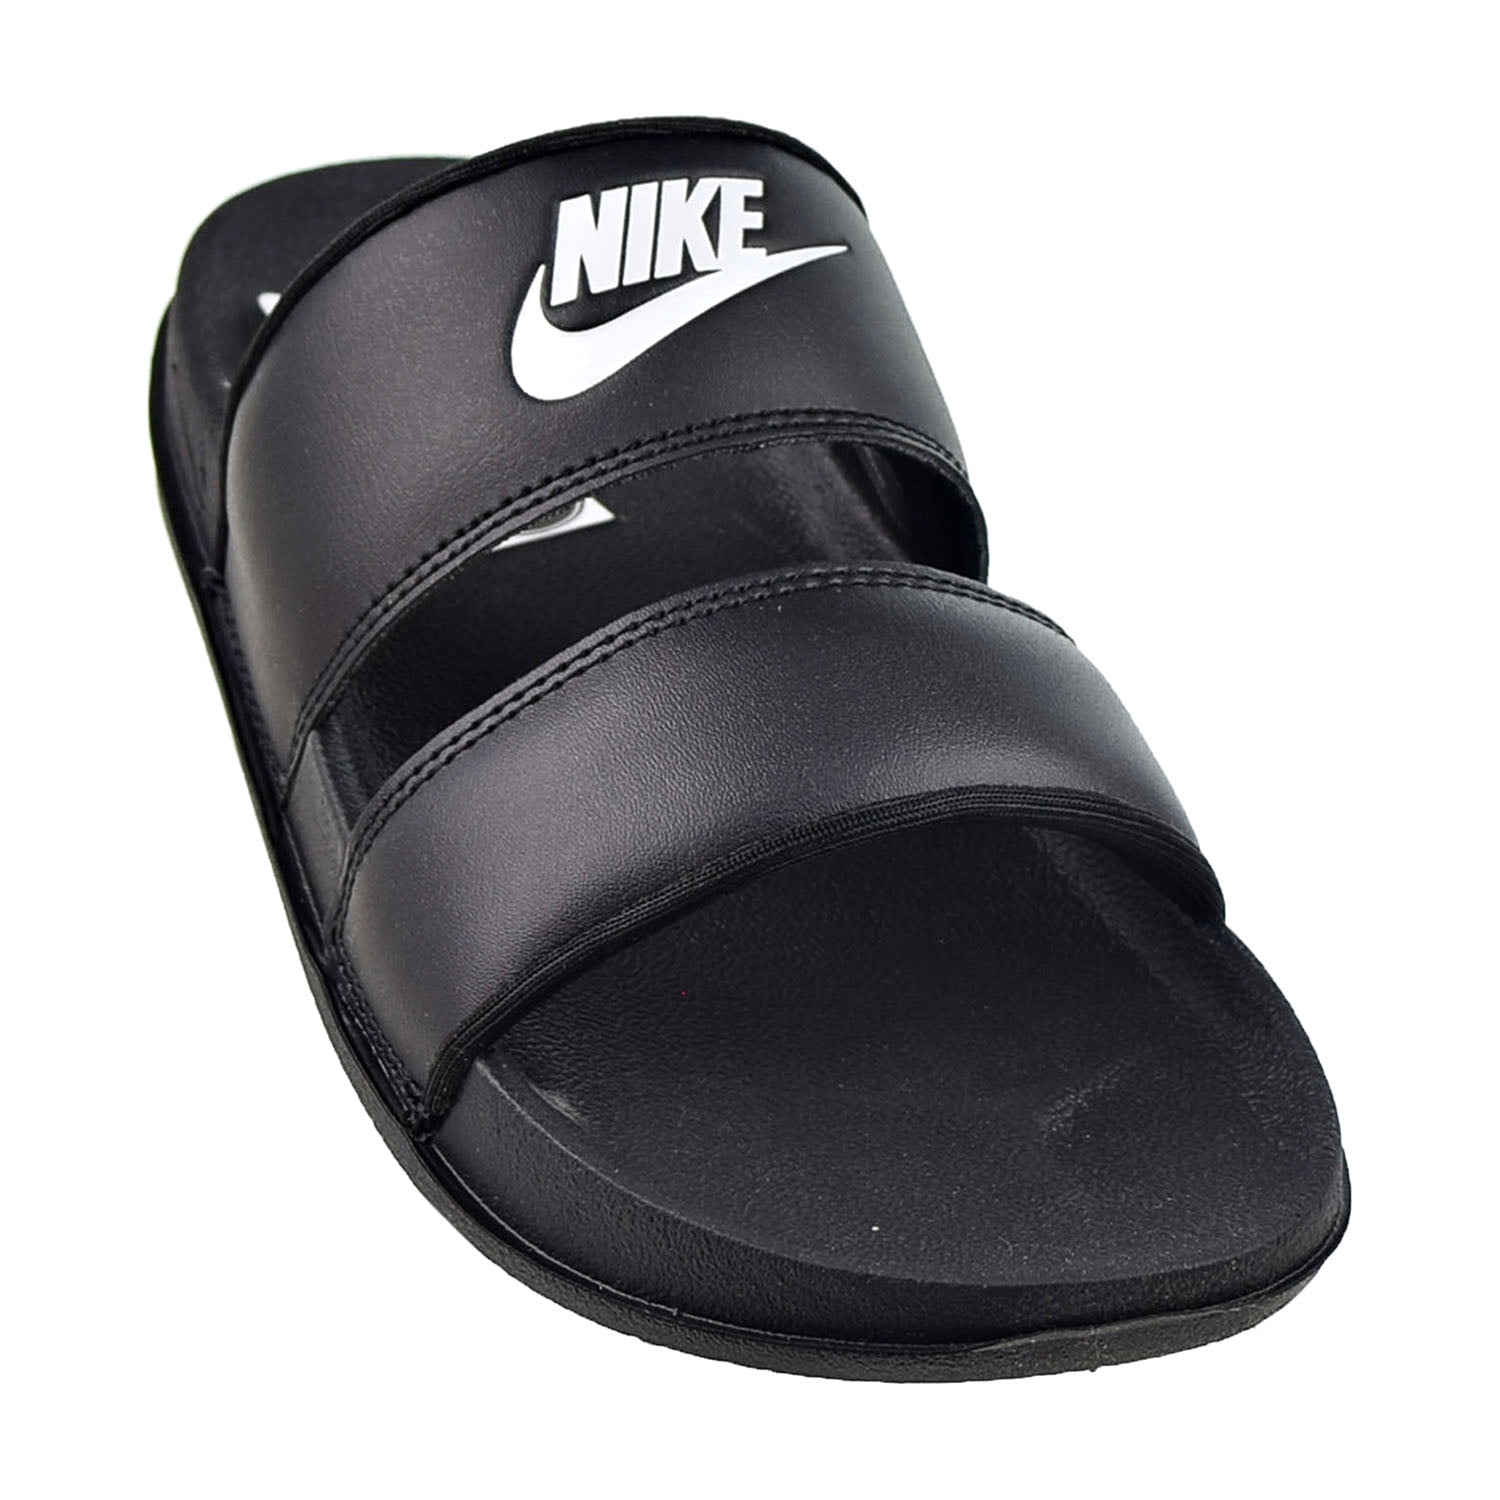 Nike Offcourt Women's Slides Black-White dc0496-001 - Walmart.com